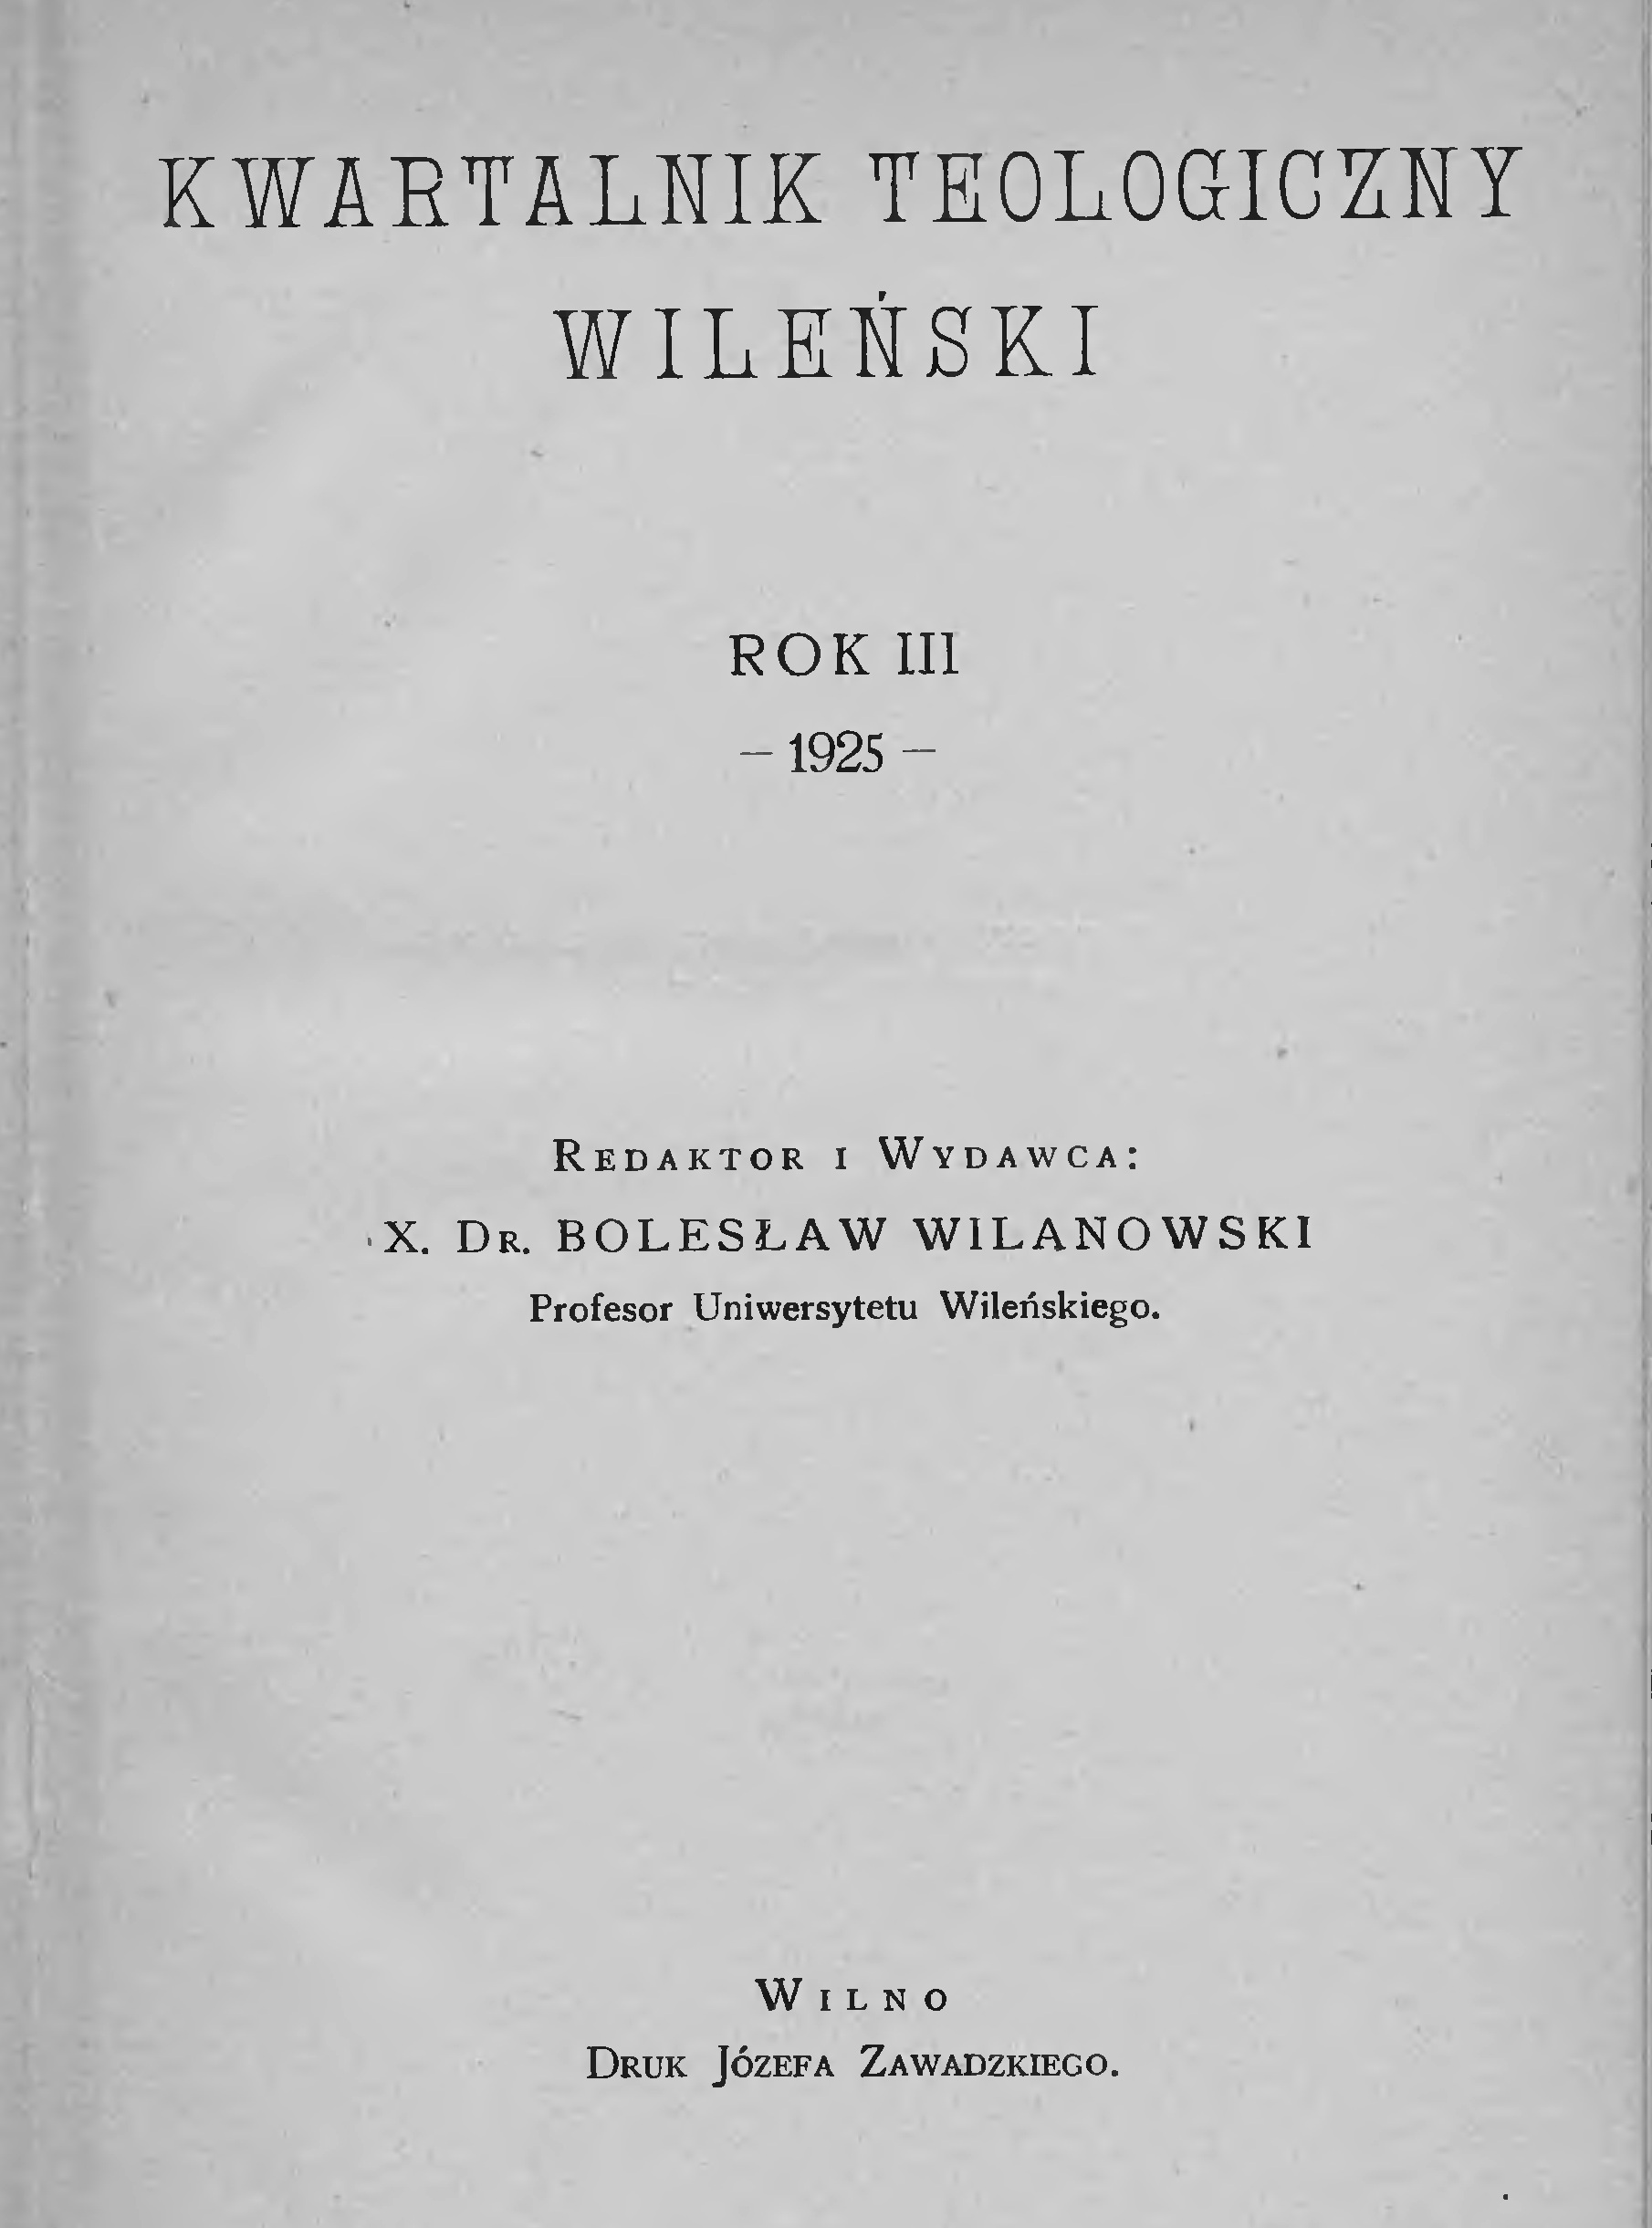 "Kwartalnik Teologiczny Wileński". Wilno. Rok III. 1925. (REDAKTOR: X. DR. BOLESŁAW WILANOWSKI, PROF. UNIW. STEFANA BATOREGO).